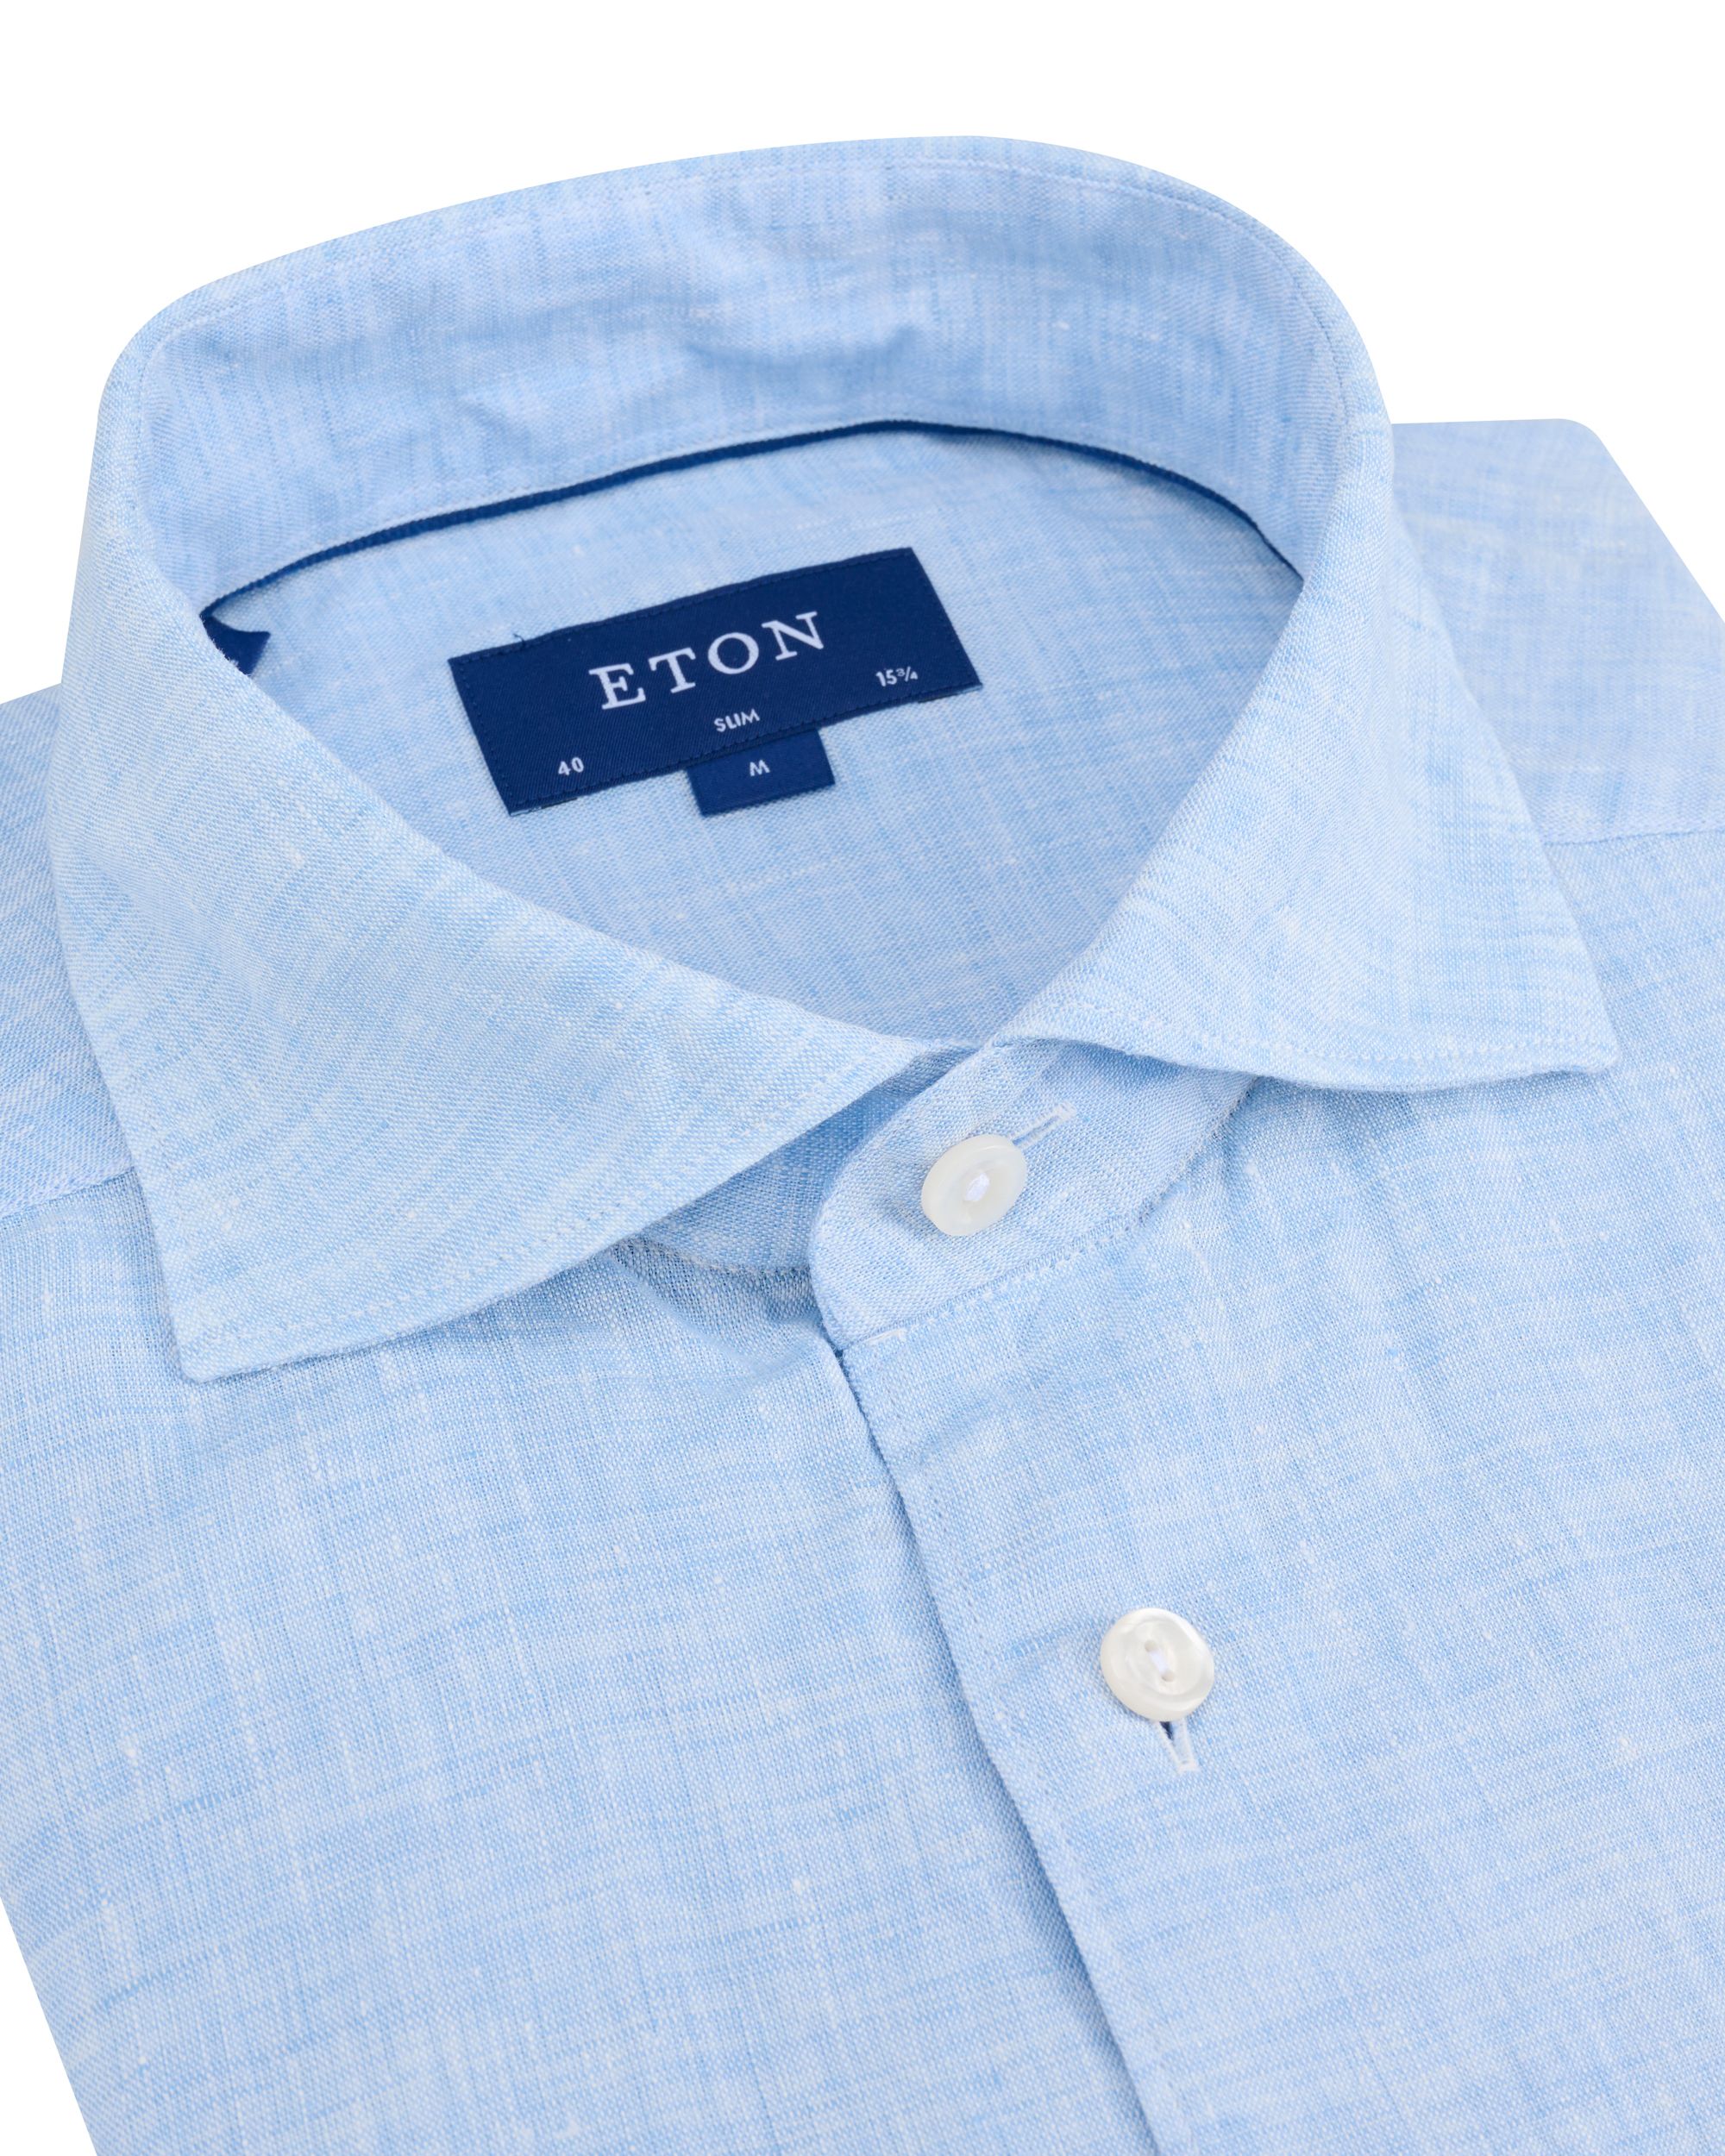 ETON Overhemd LM Blauw 091982-001-39